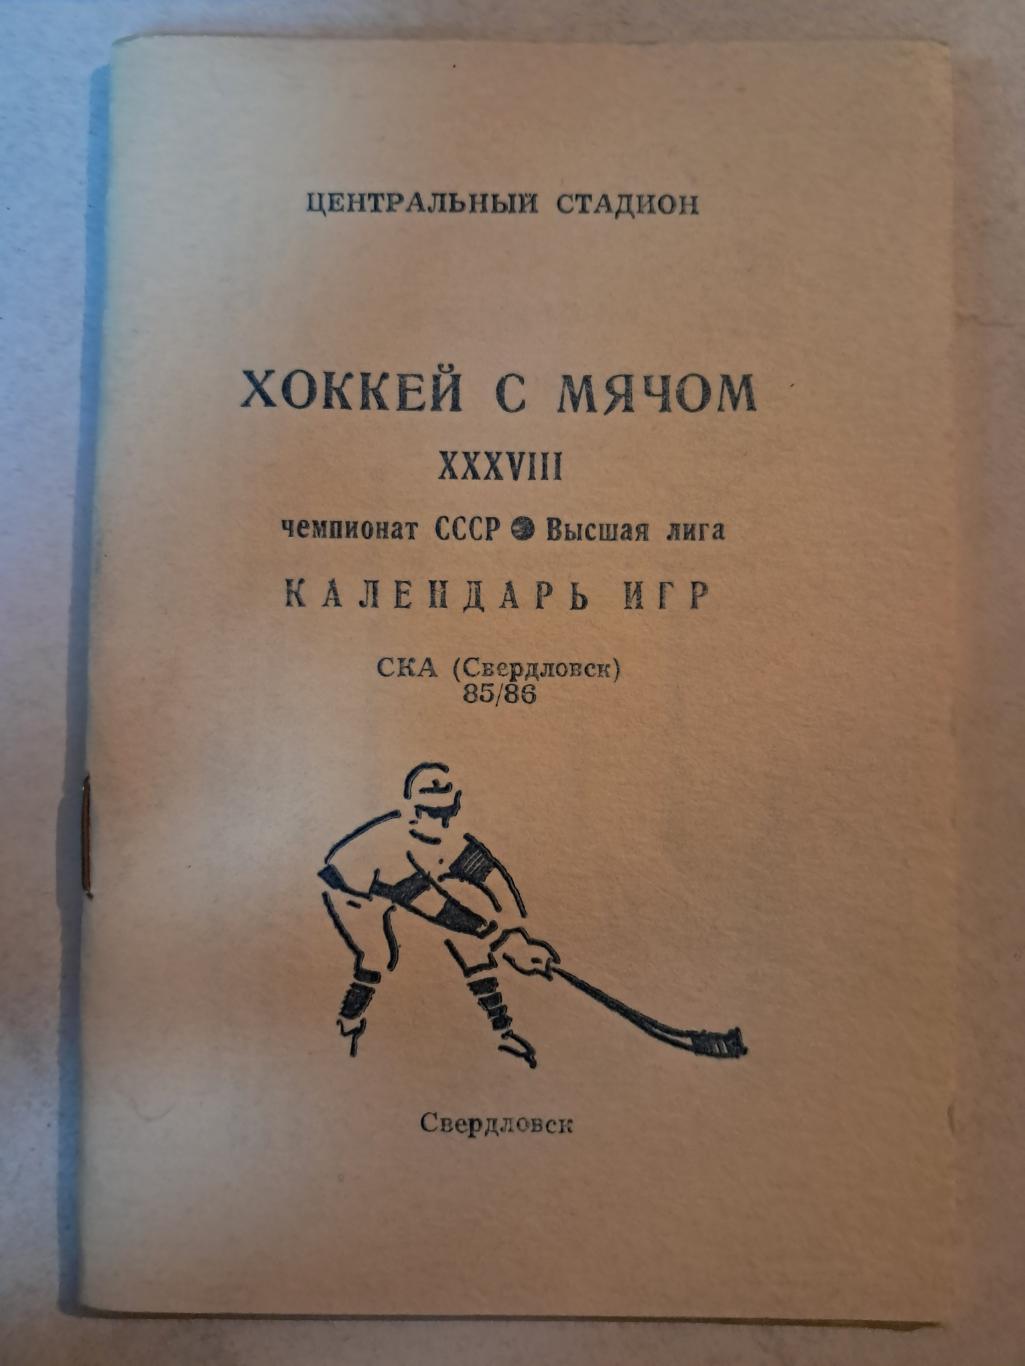 Календарь игр 1985/86 СКА Свердловск